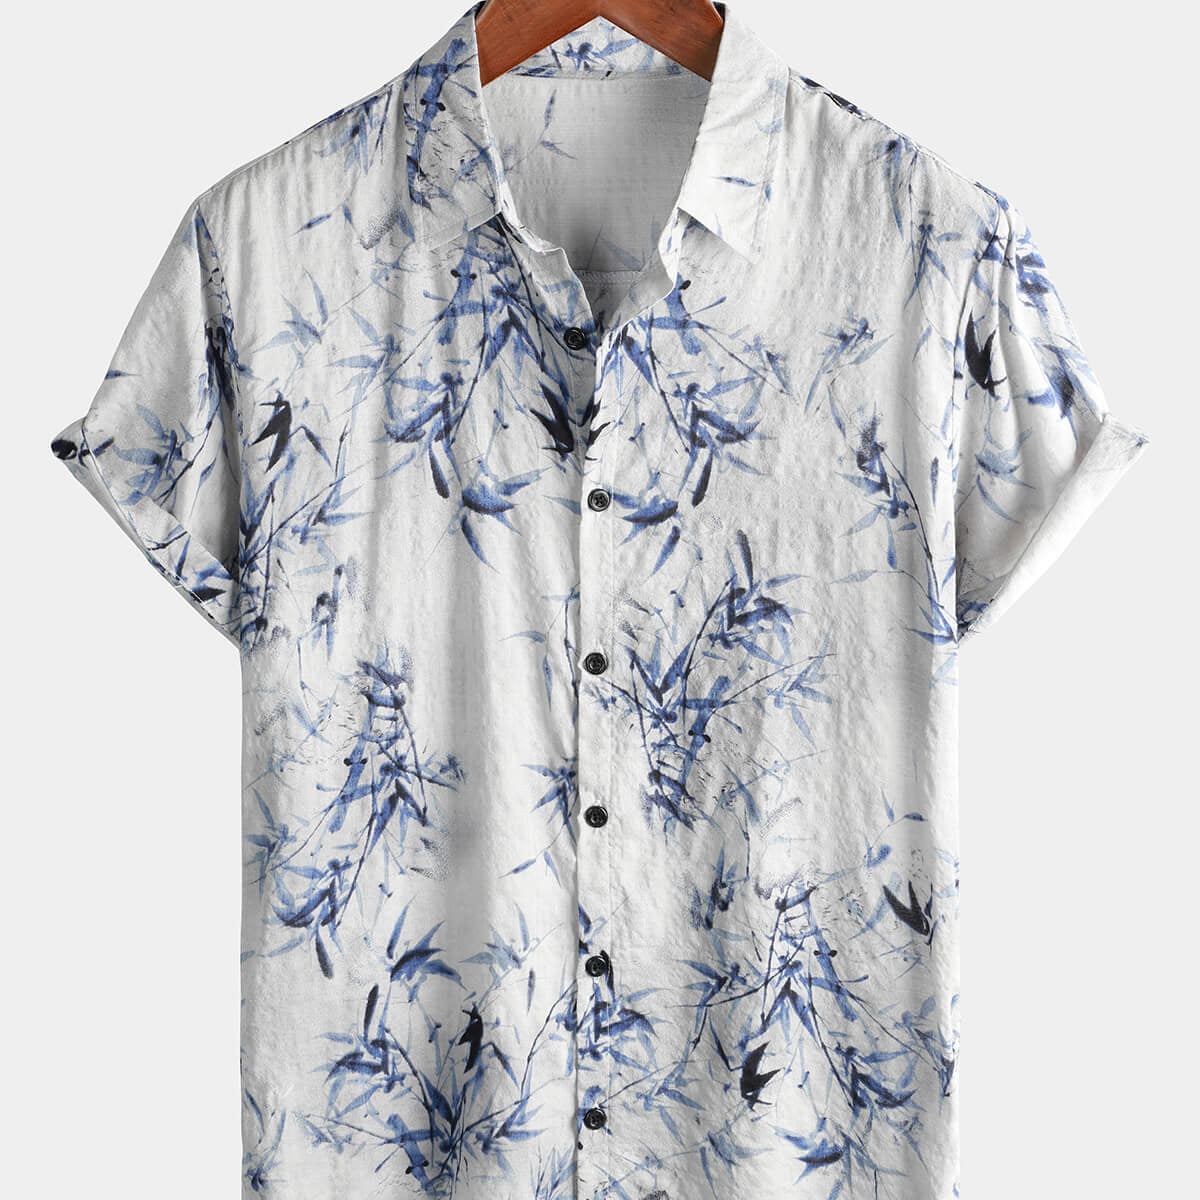 Men's Cotton Bamboo Art Print Button Summer Casual Short Sleeve Light Blue Hawaiian Shirt